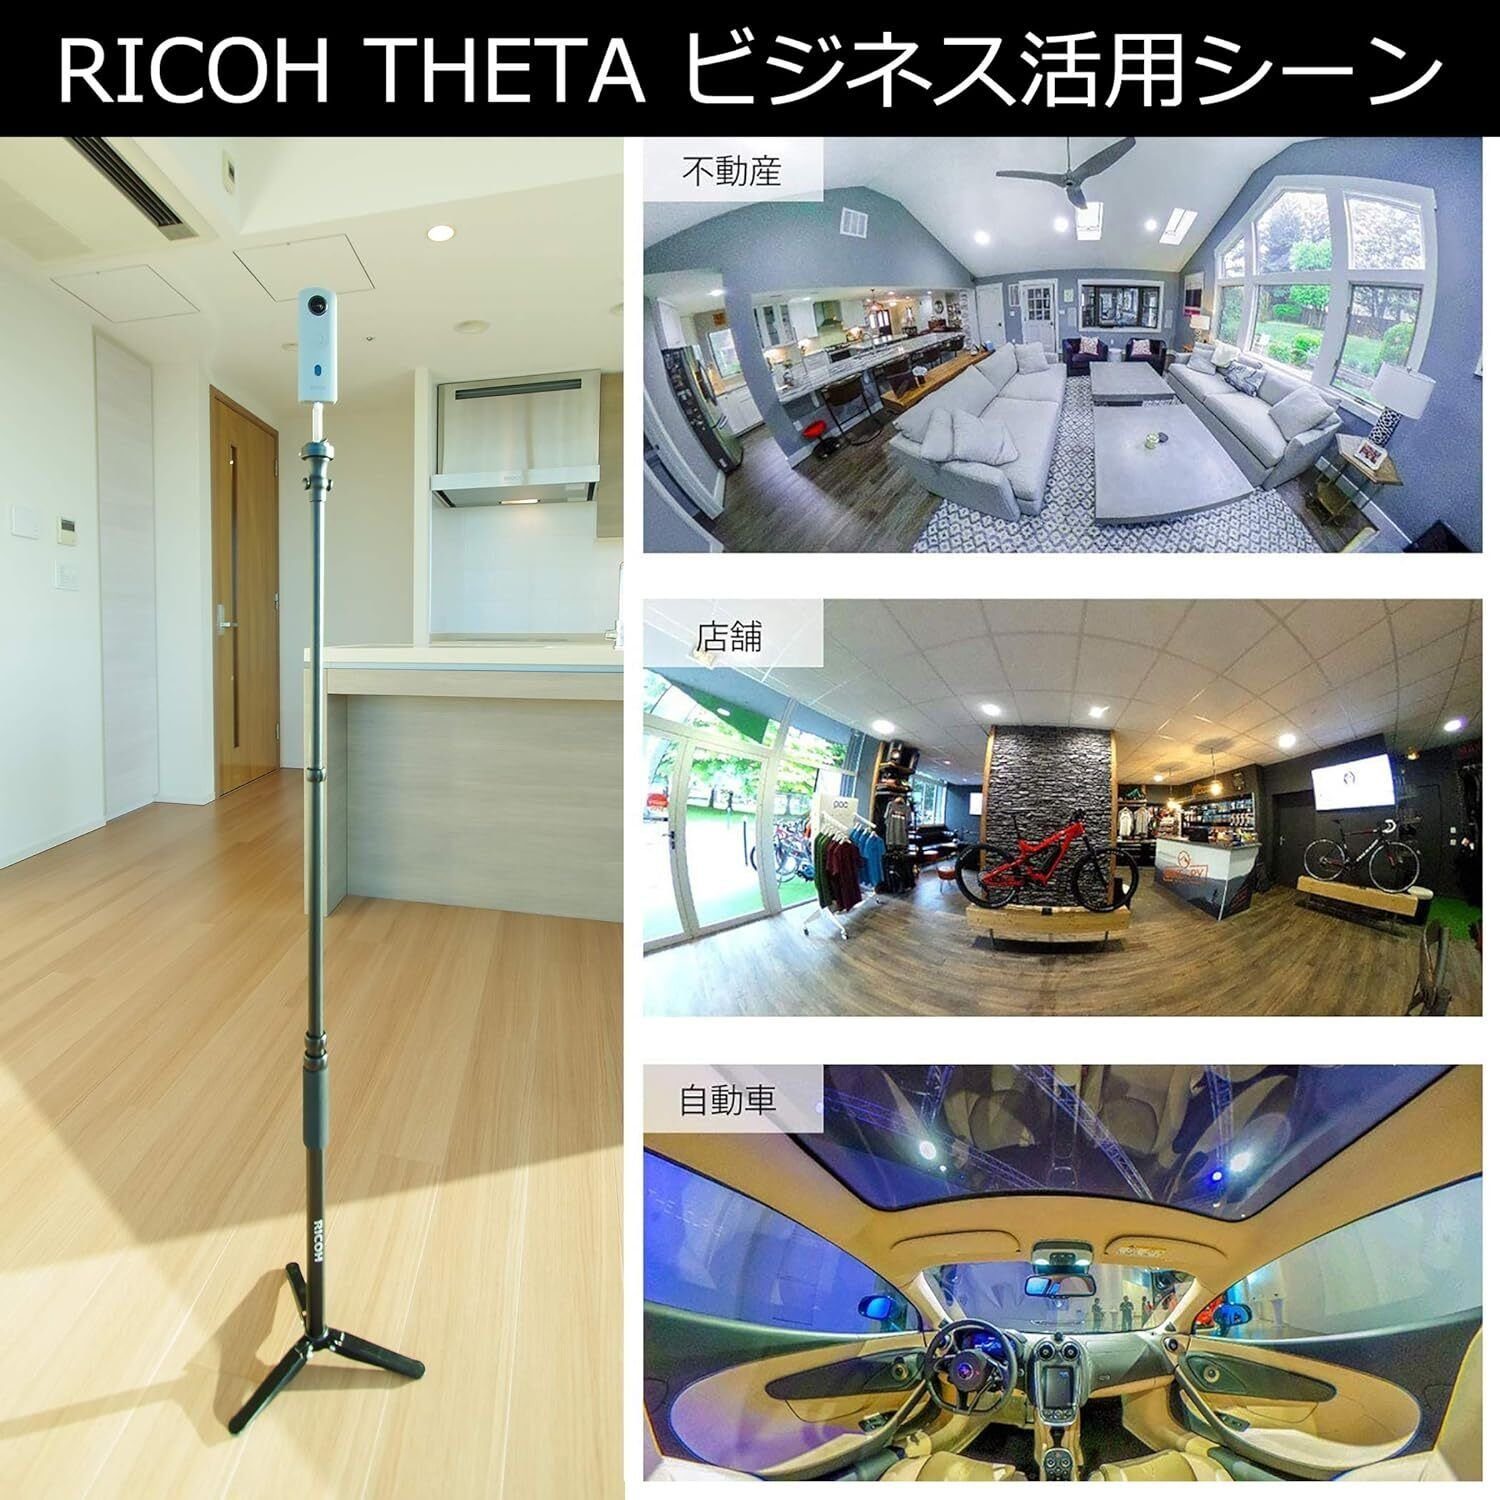 (Wi-Fi) Theta Ricoh 360°-Kamera SC2 (WLAN